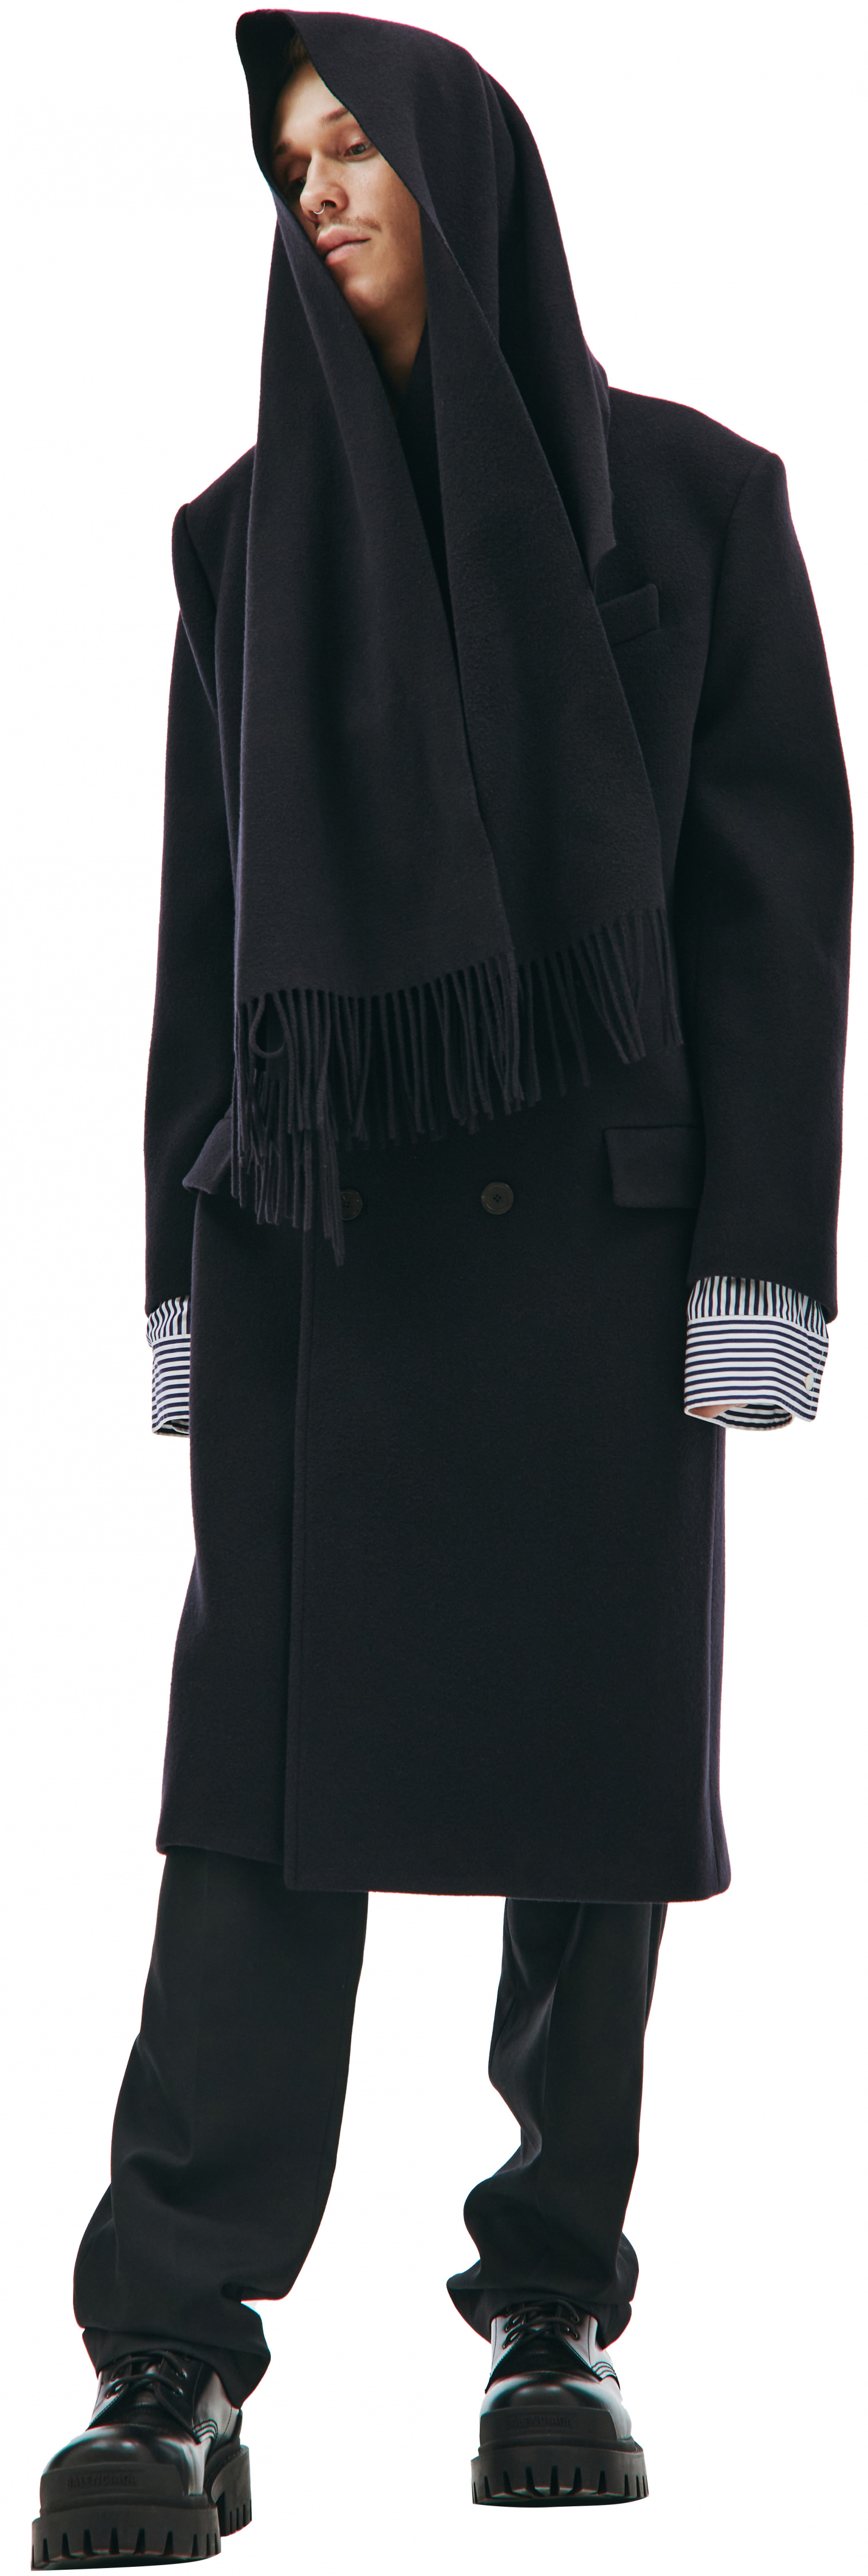 Balenciaga Пальто из шерсти с шарфом